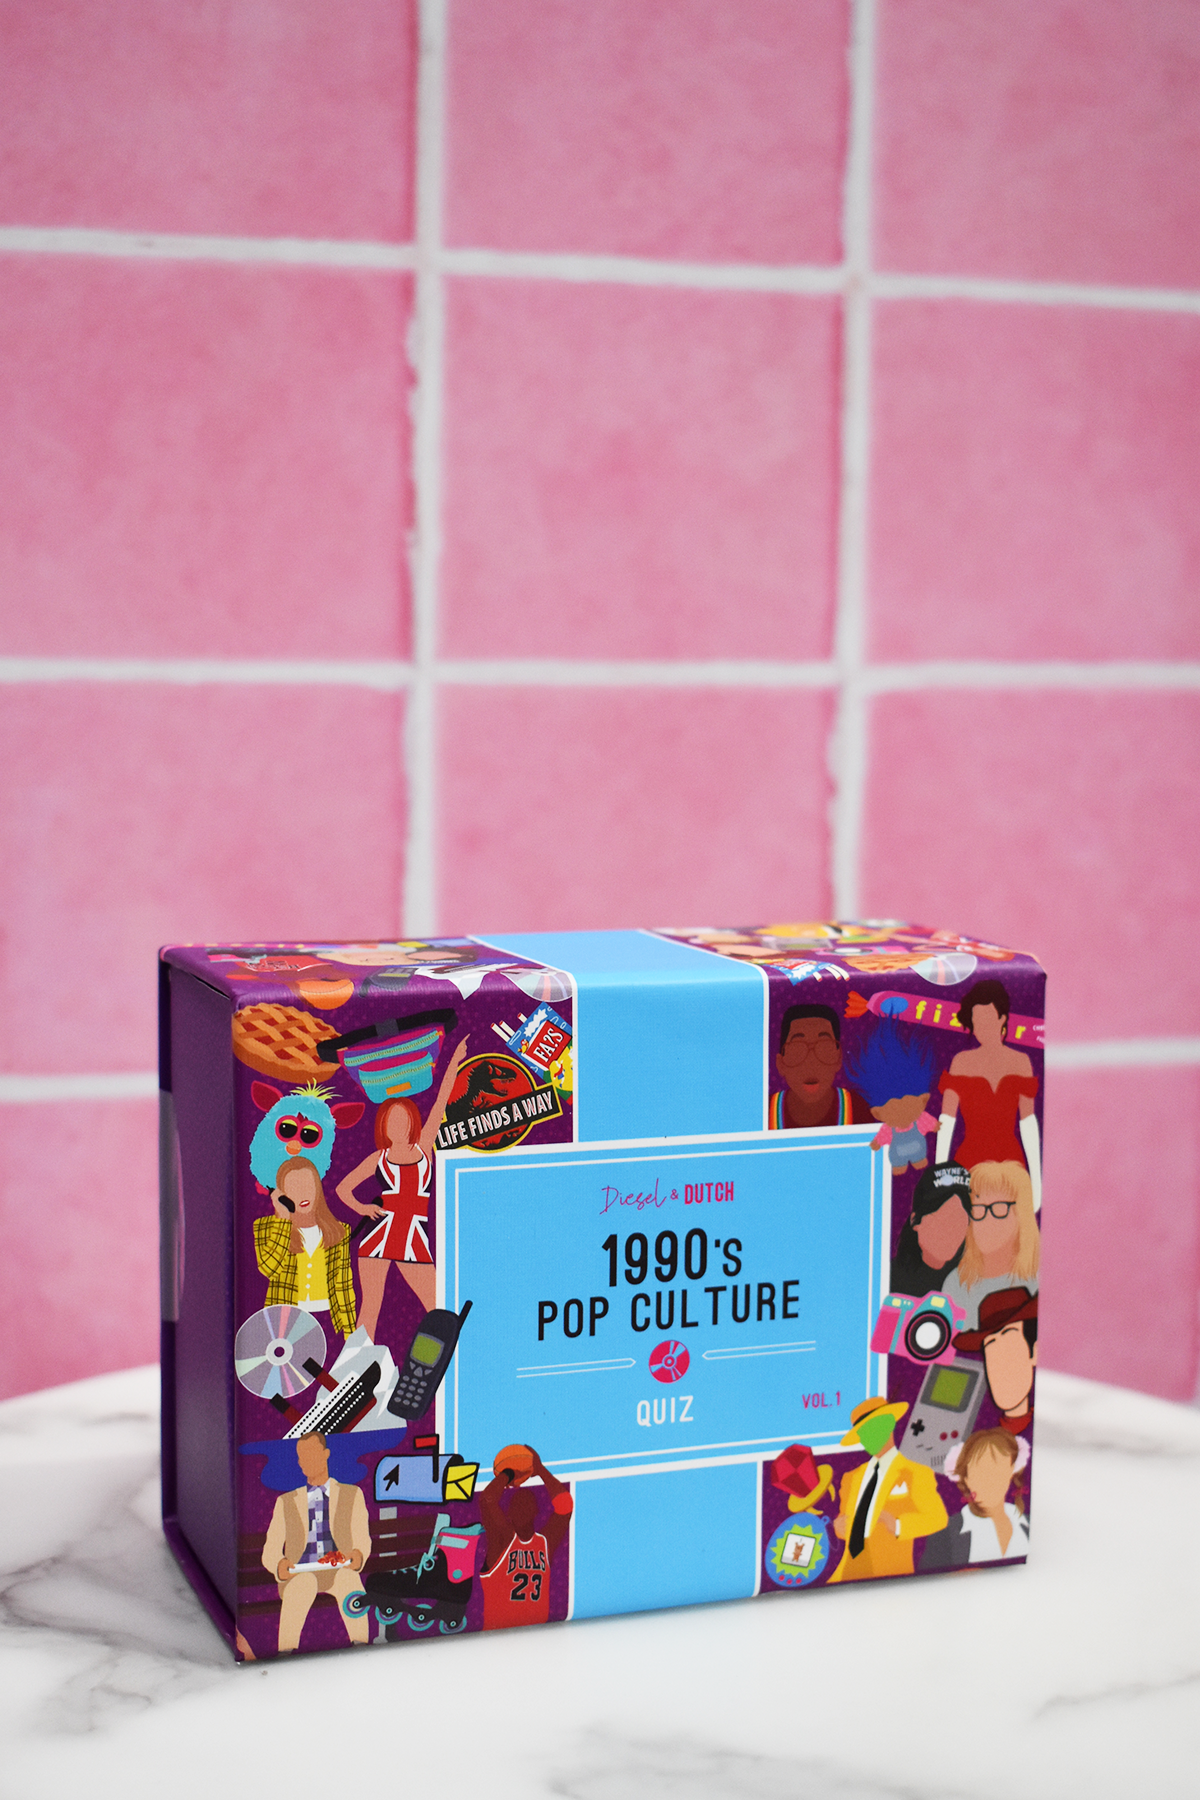 1990's Pop Culture Trivia Box